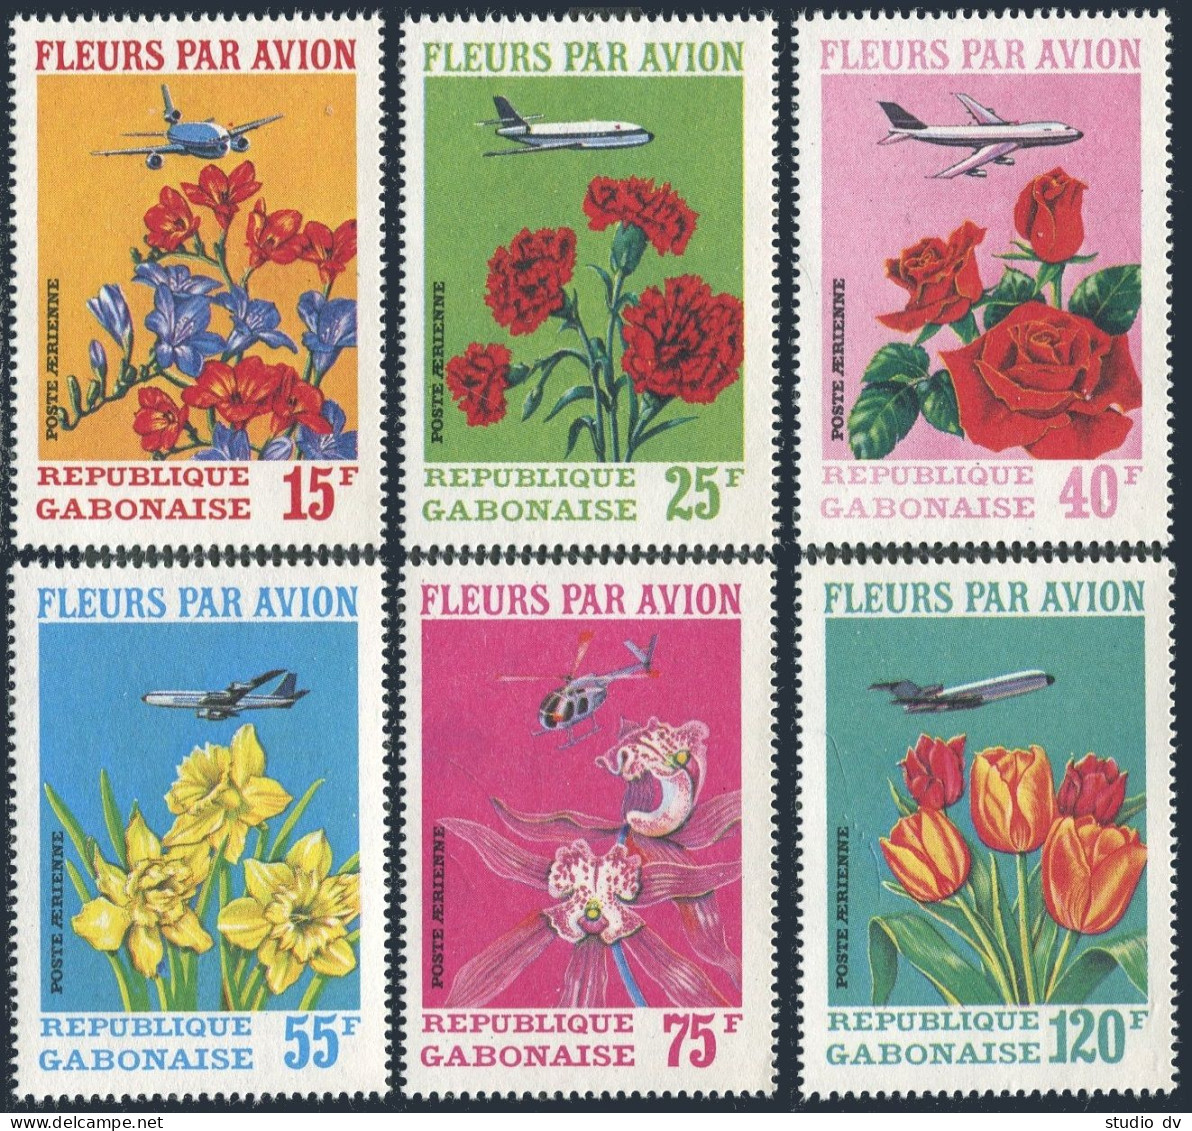 Gabon C109-C111,C111a Sheet,MNH.Michel 425-430,Bl.21. Flowers By Air,1971. - Gabon (1960-...)